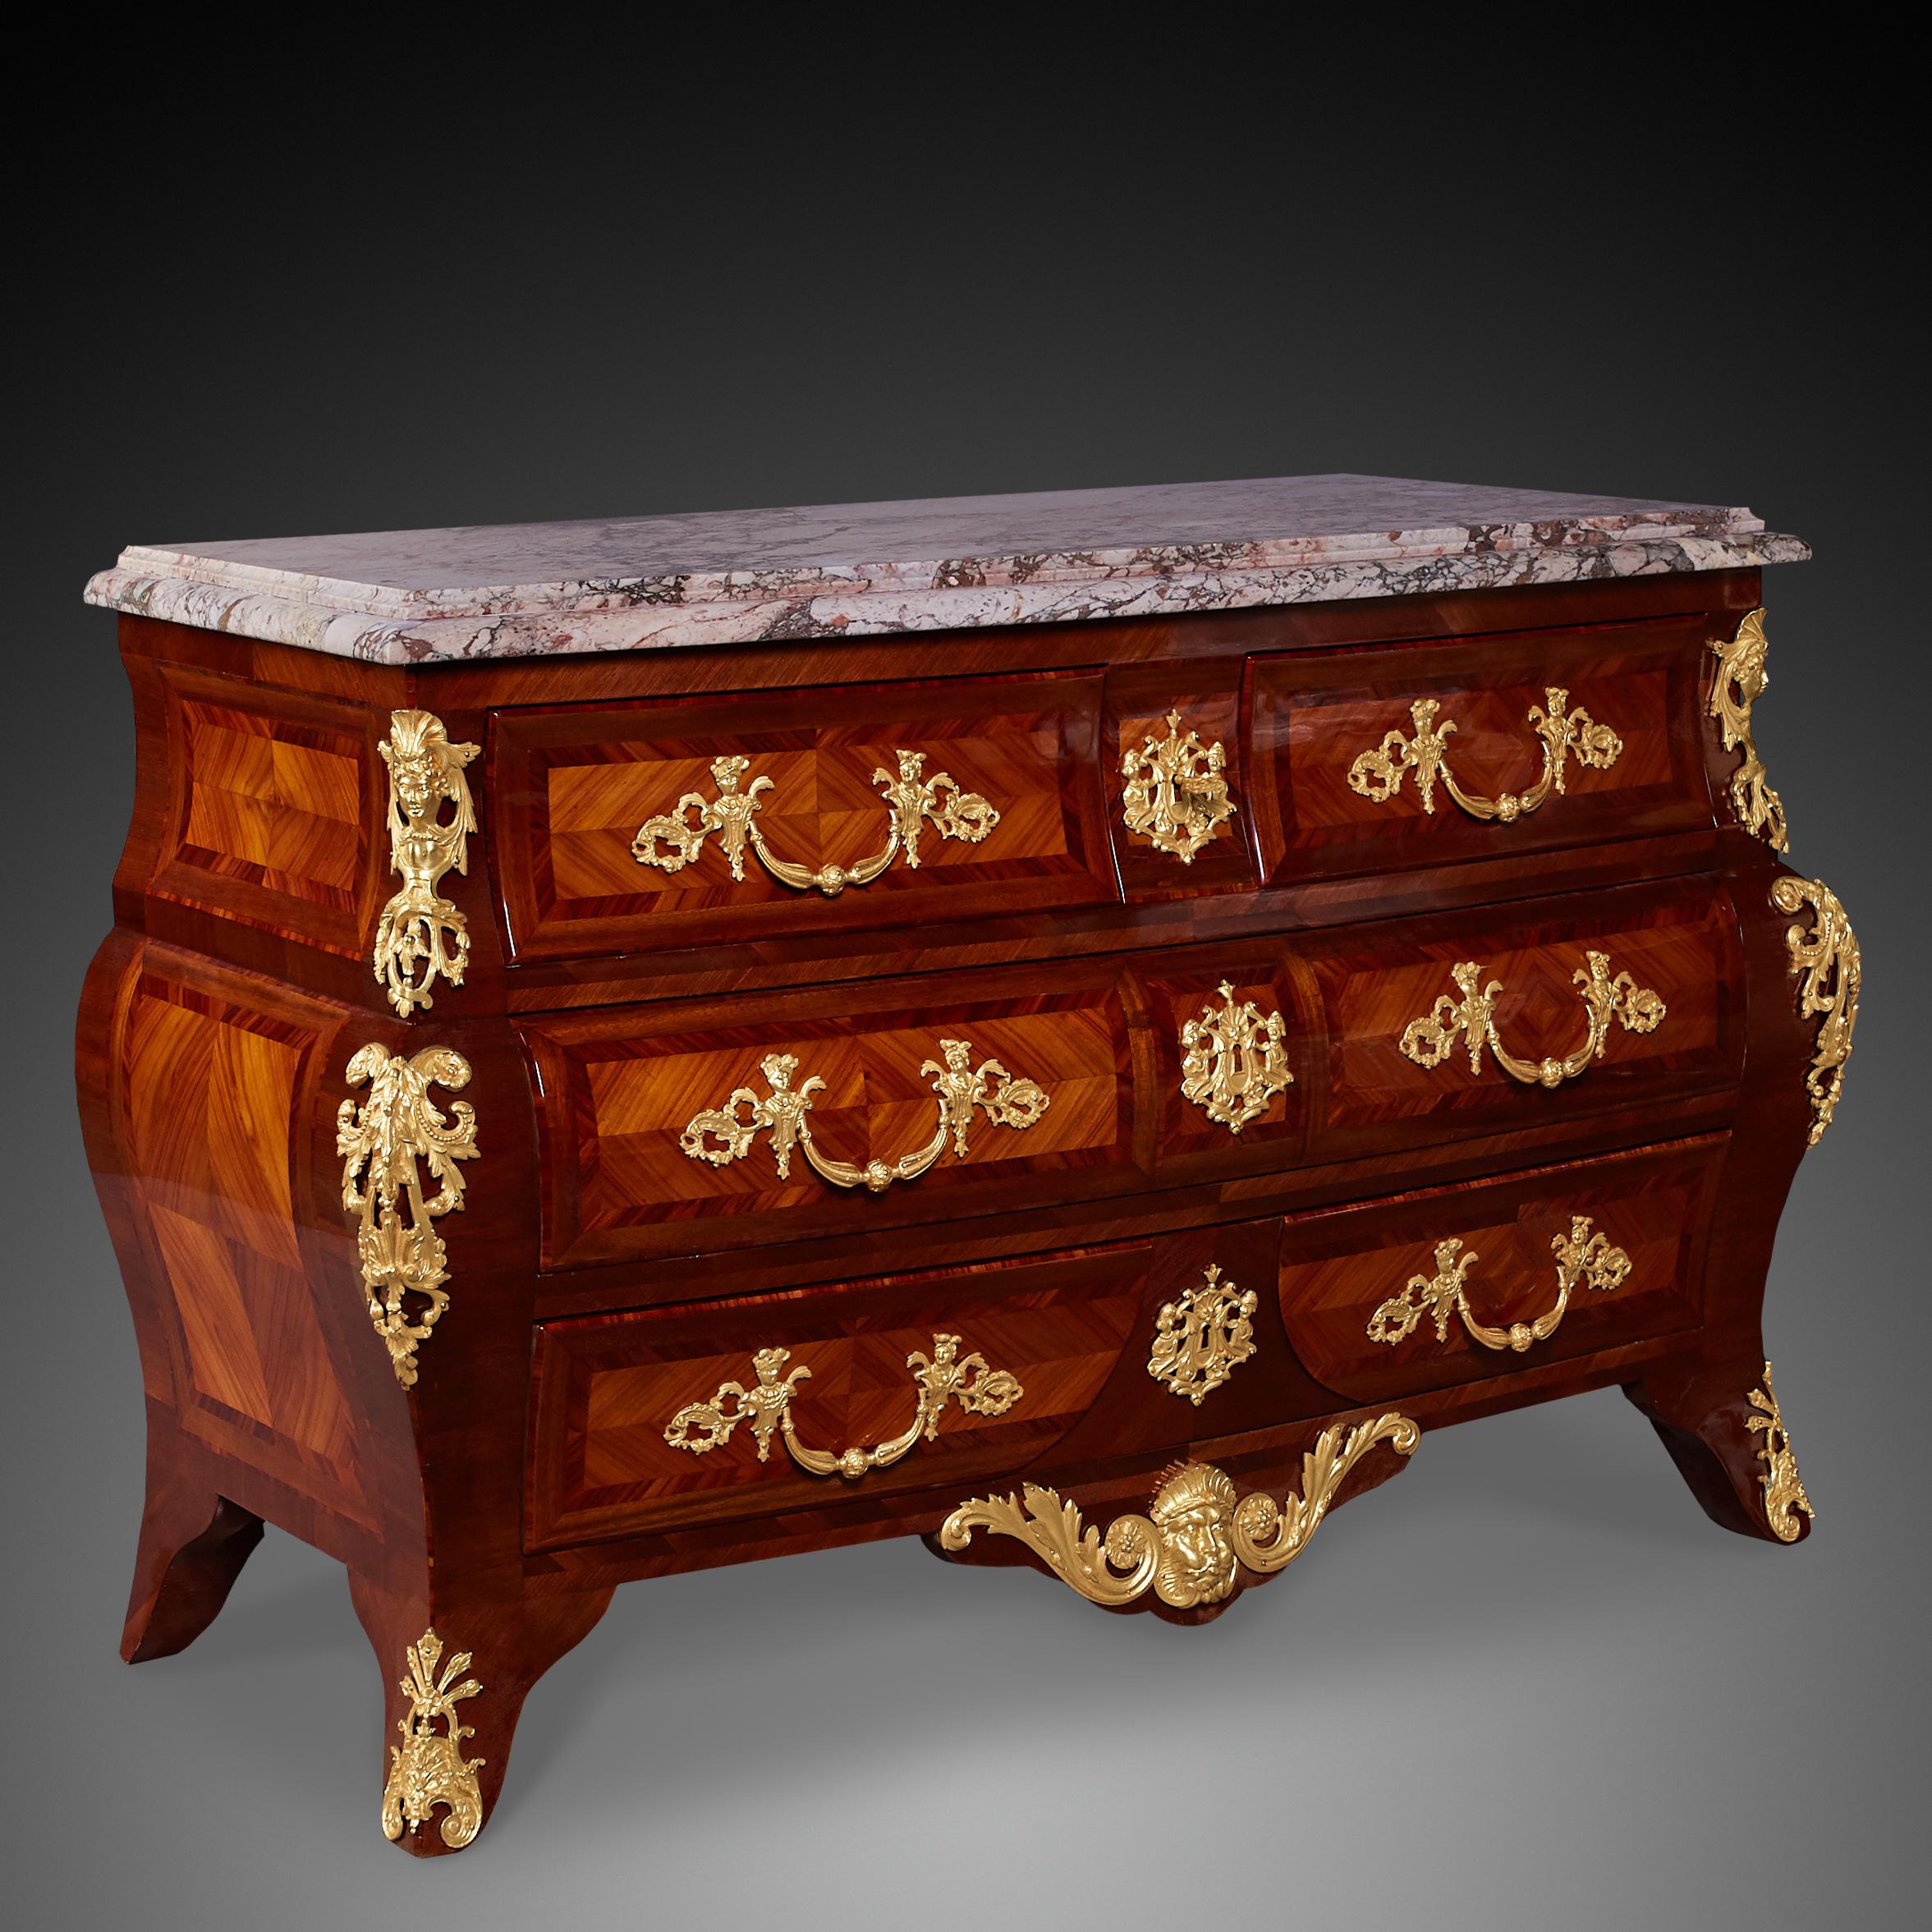 Commode de style Louis XVI du 19ème siècle. Ce meuble a fait l'objet d'une rénovation de très bonne qualité.